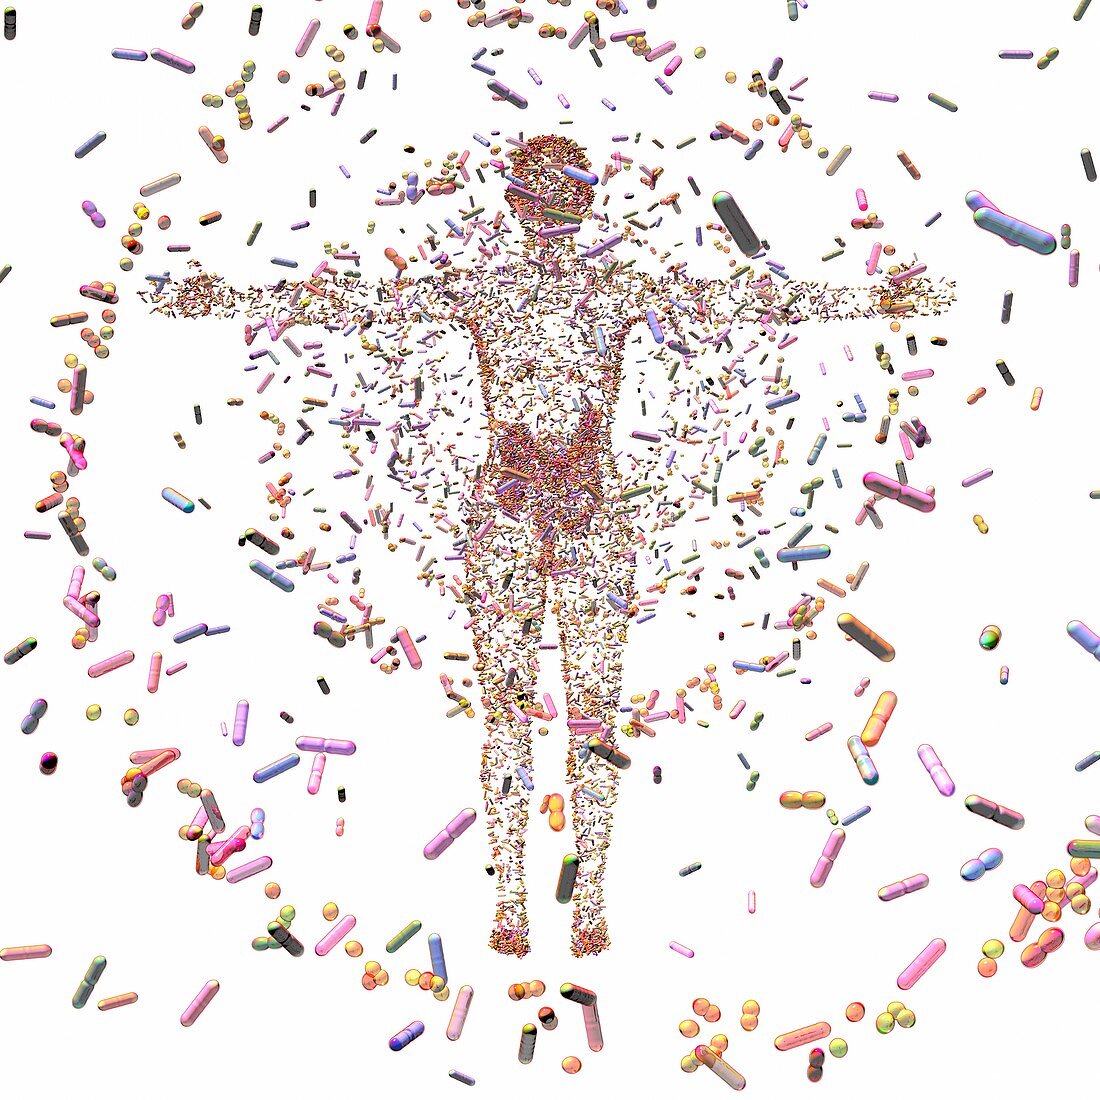 Human microbiome, conceptual illustration